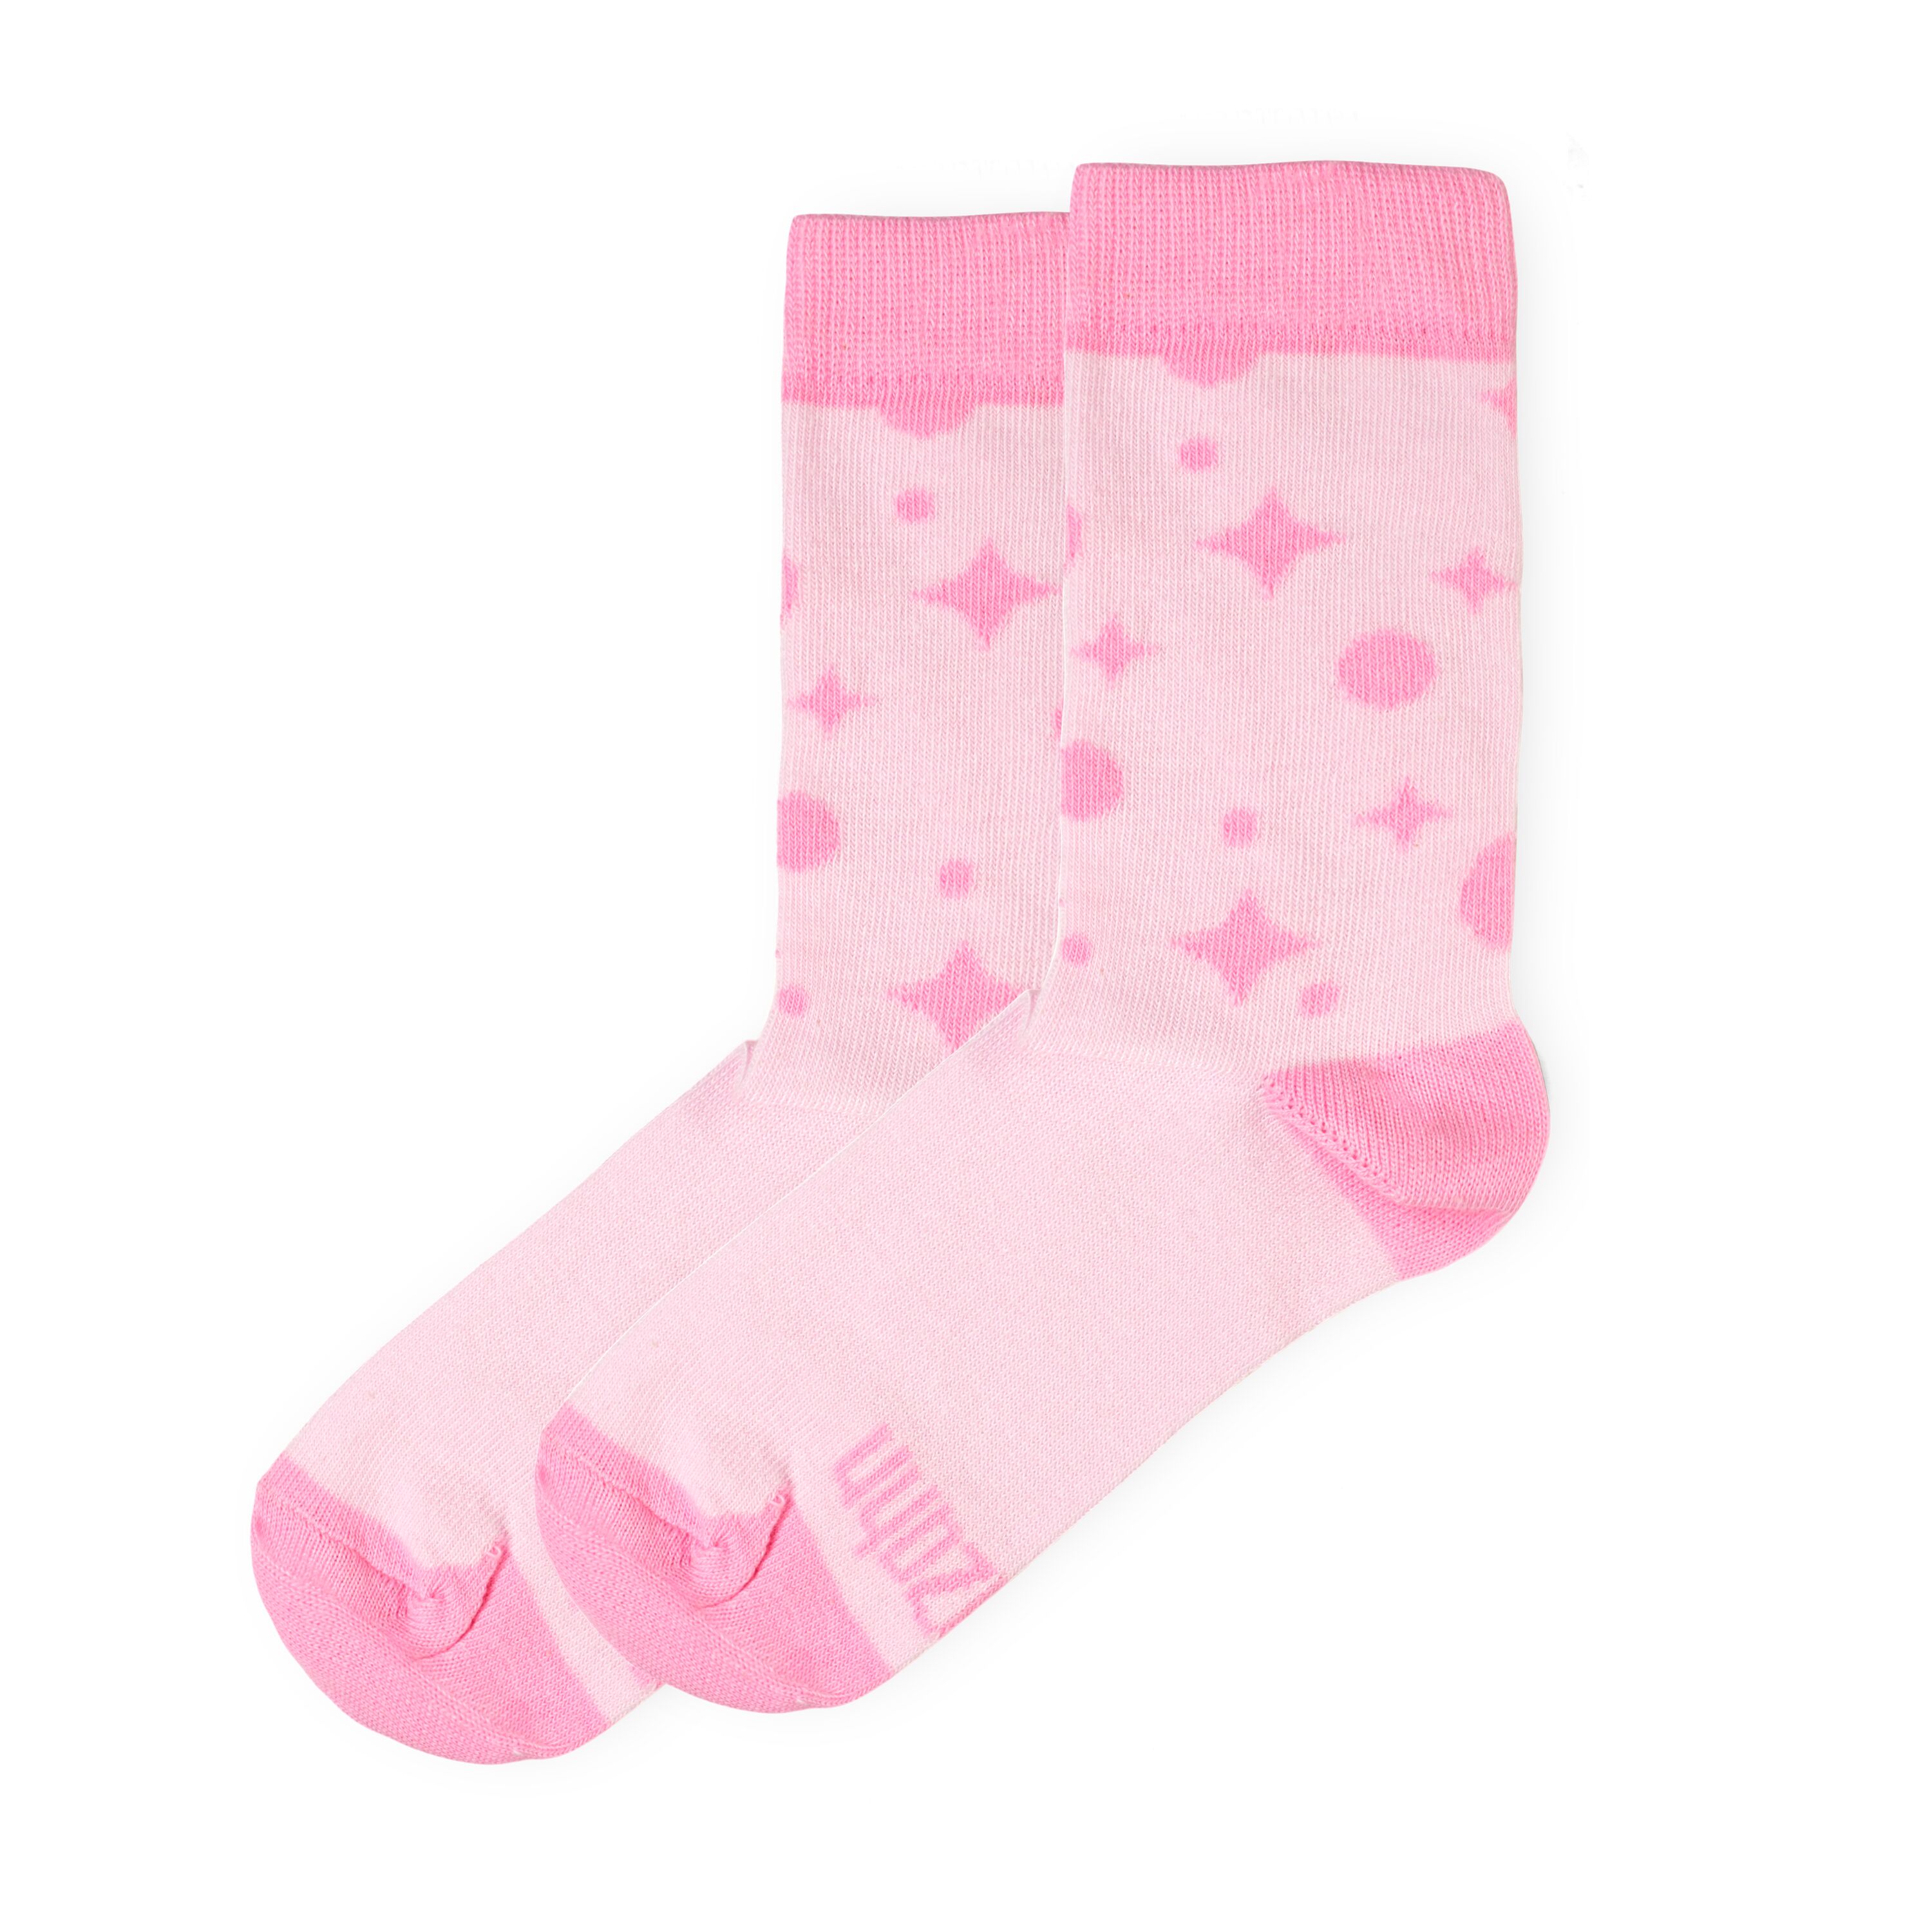 GOTS Bio-Baumwolle Socken Einhorn Gr. 19 00957-50023-1100